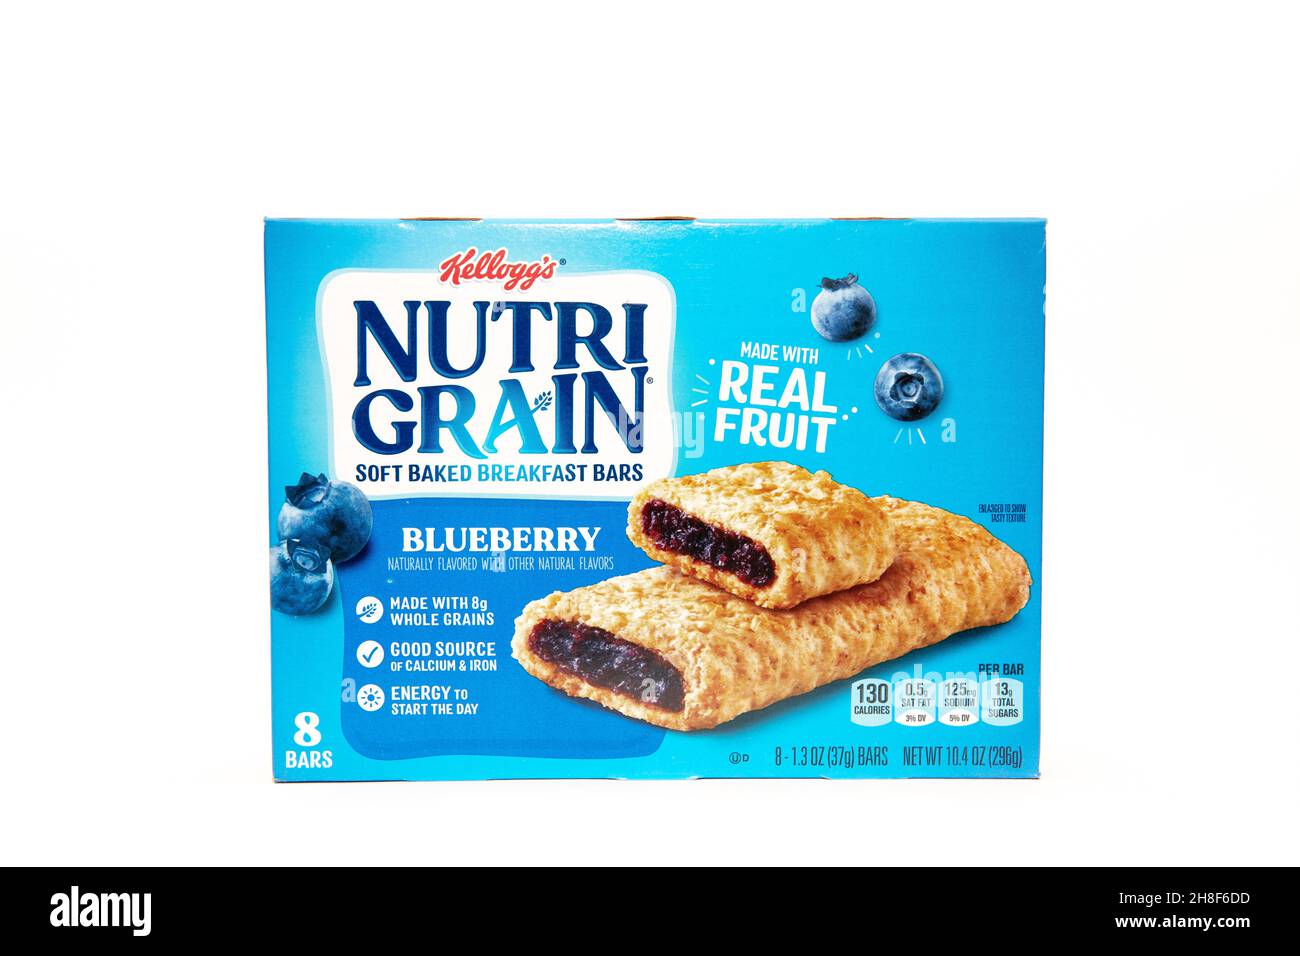 Una scatola di 8 bar Kellogg's Nutri Grain Blueberry, soffici bar per la colazione al forno, fatti con vera frutta e cereali interi Foto Stock